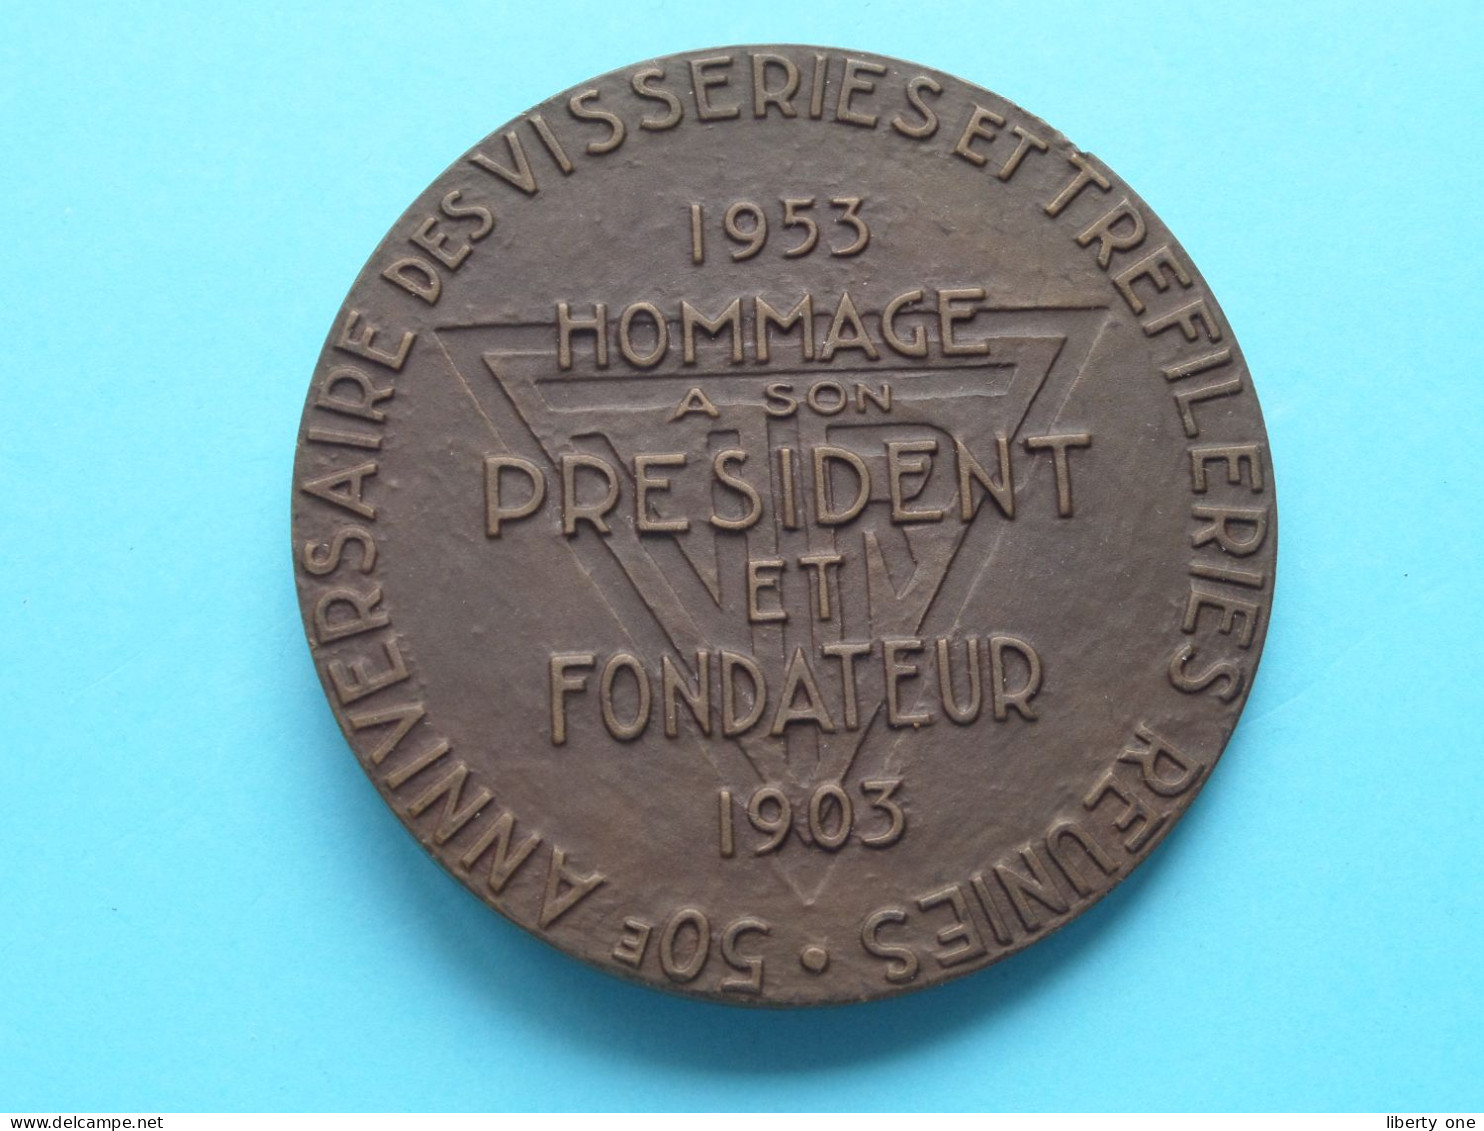 ALBERT FERON - 1953 Hommage à Son President Et FONDATEUR 1903 / 50e Anni ( See Voir SCANS ) 7 Cm. / 170 Gram (Cliquet) - Professionals / Firms